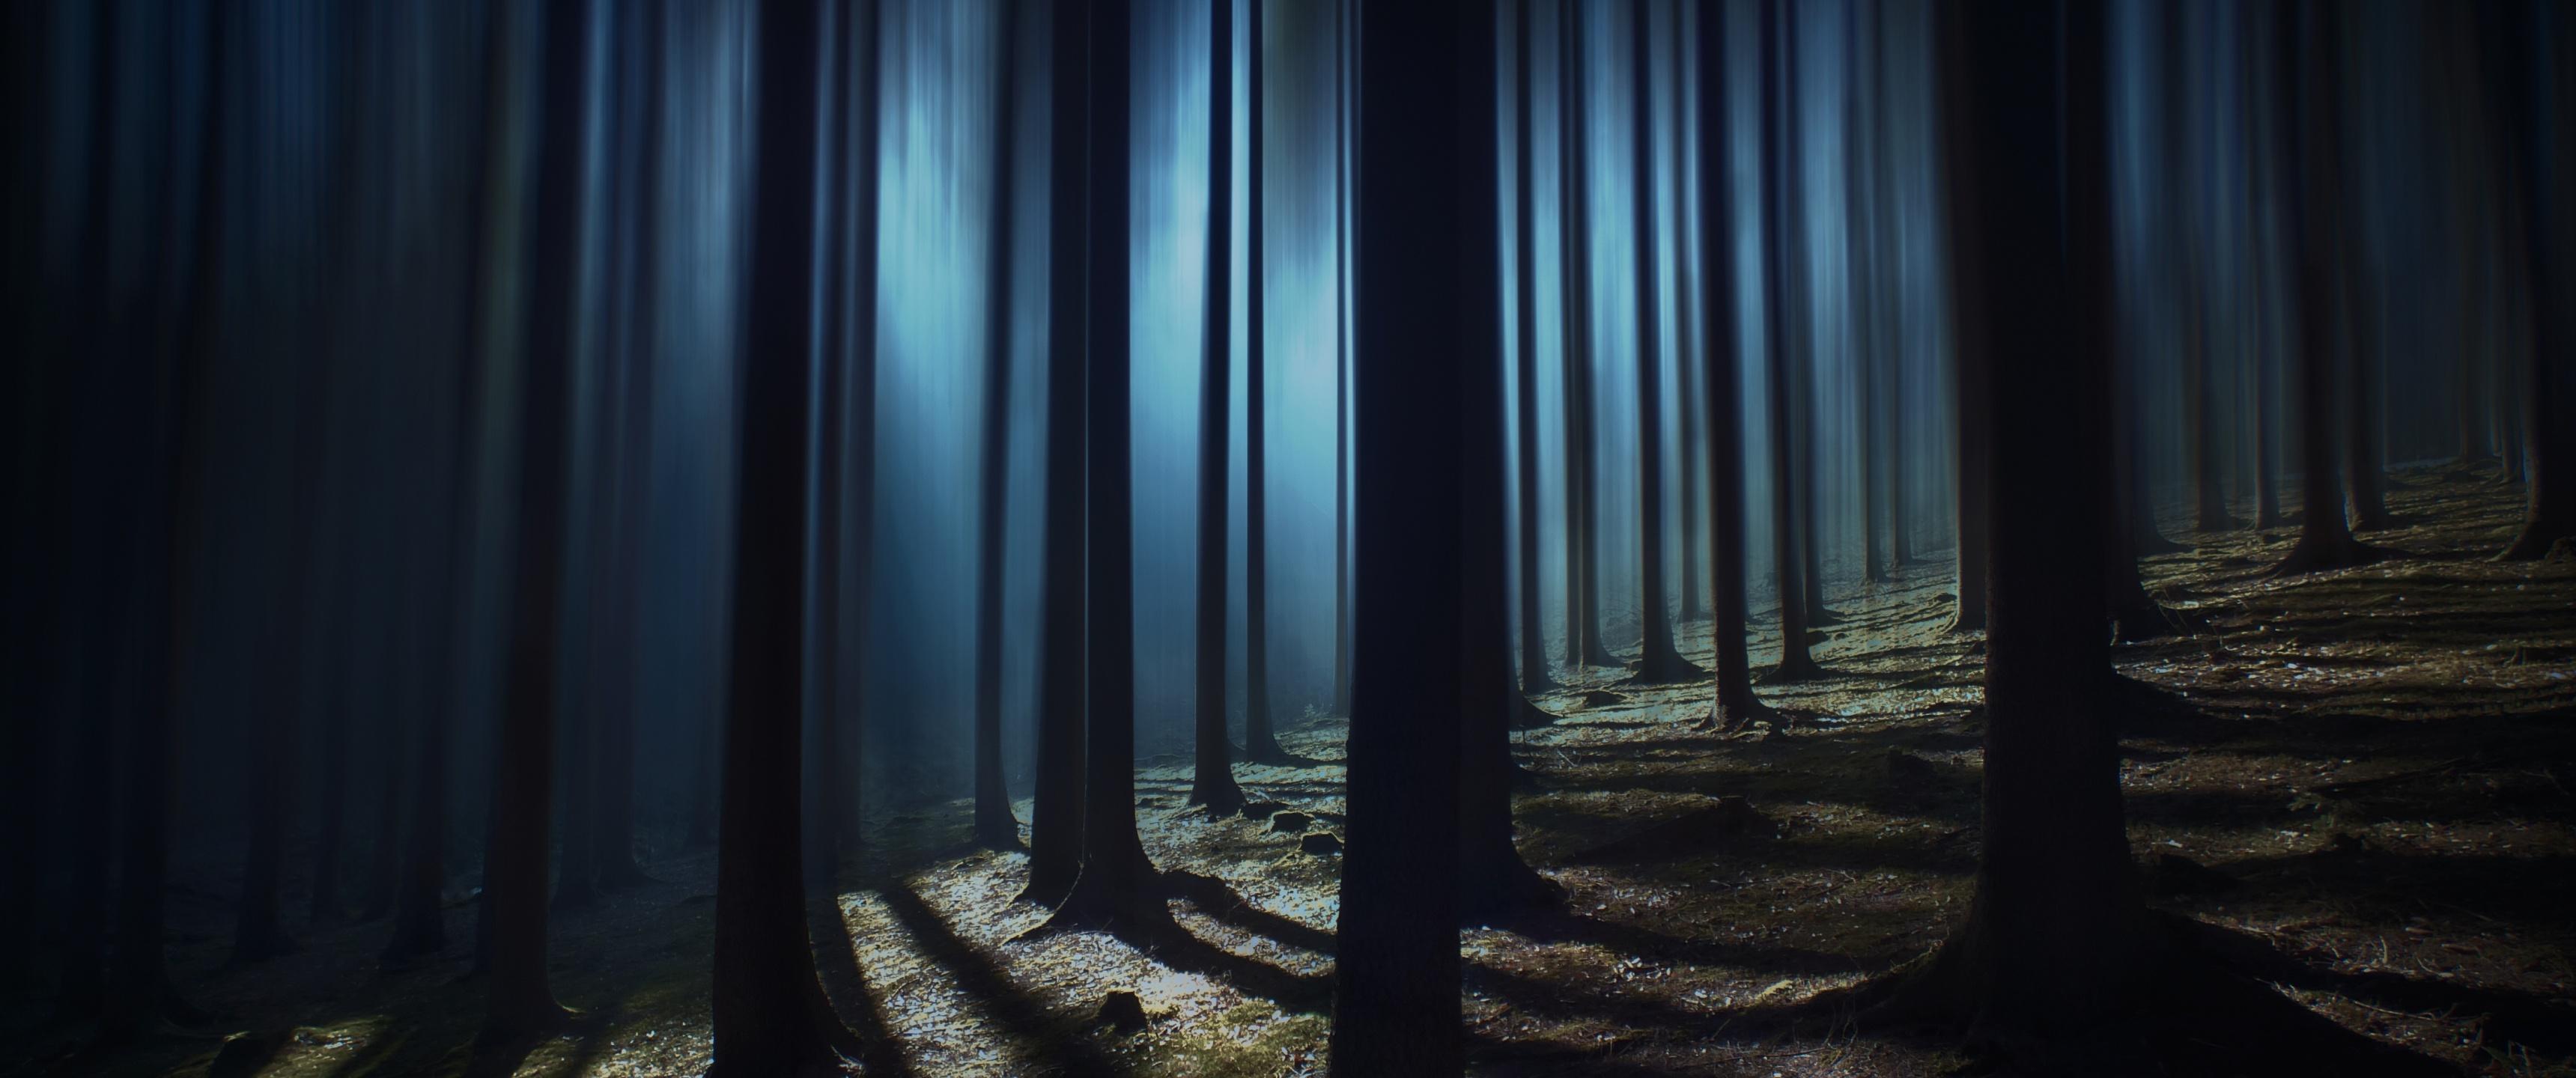 Với hình nền Dark woods 8K, bạn sẽ cảm nhận được một không gian hoang dã đầy bí ẩn, huyền bí. Đường nét tự nhiên của gỗ và tầm nhìn bao la vô tận sẽ khiến cho bạn cảm giác như đang đi vào một câu chuyện kỳ bí. Hãy cùng trải nghiệm bức ảnh đầy thú vị này.